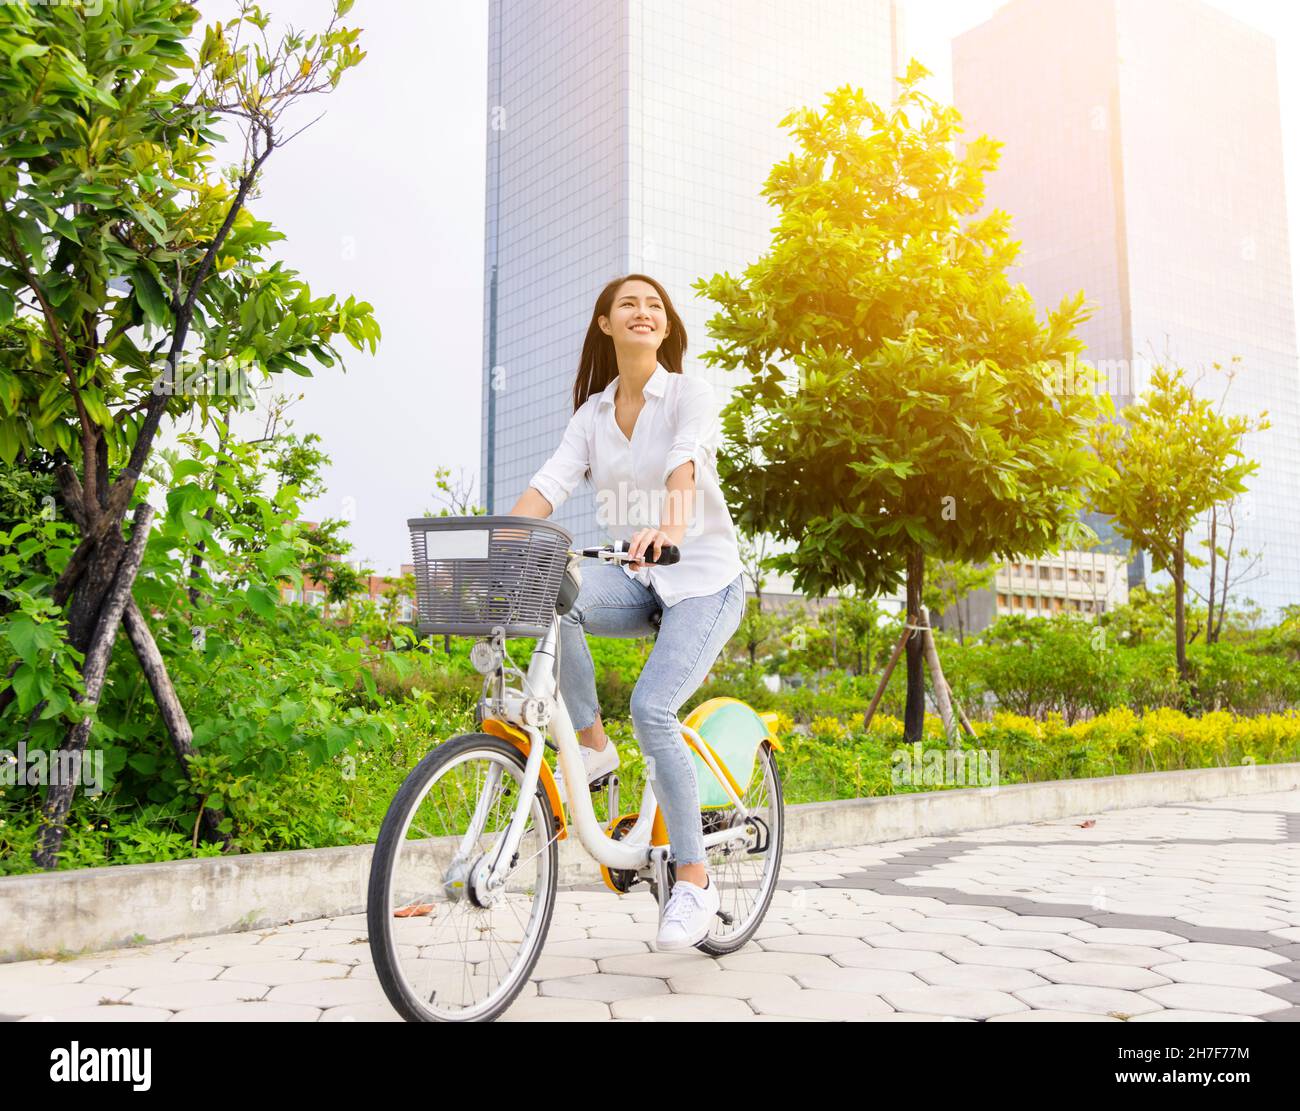 Junge attraktive Frau, die mit dem Fahrrad durch den Stadtpark fährt Stockfoto